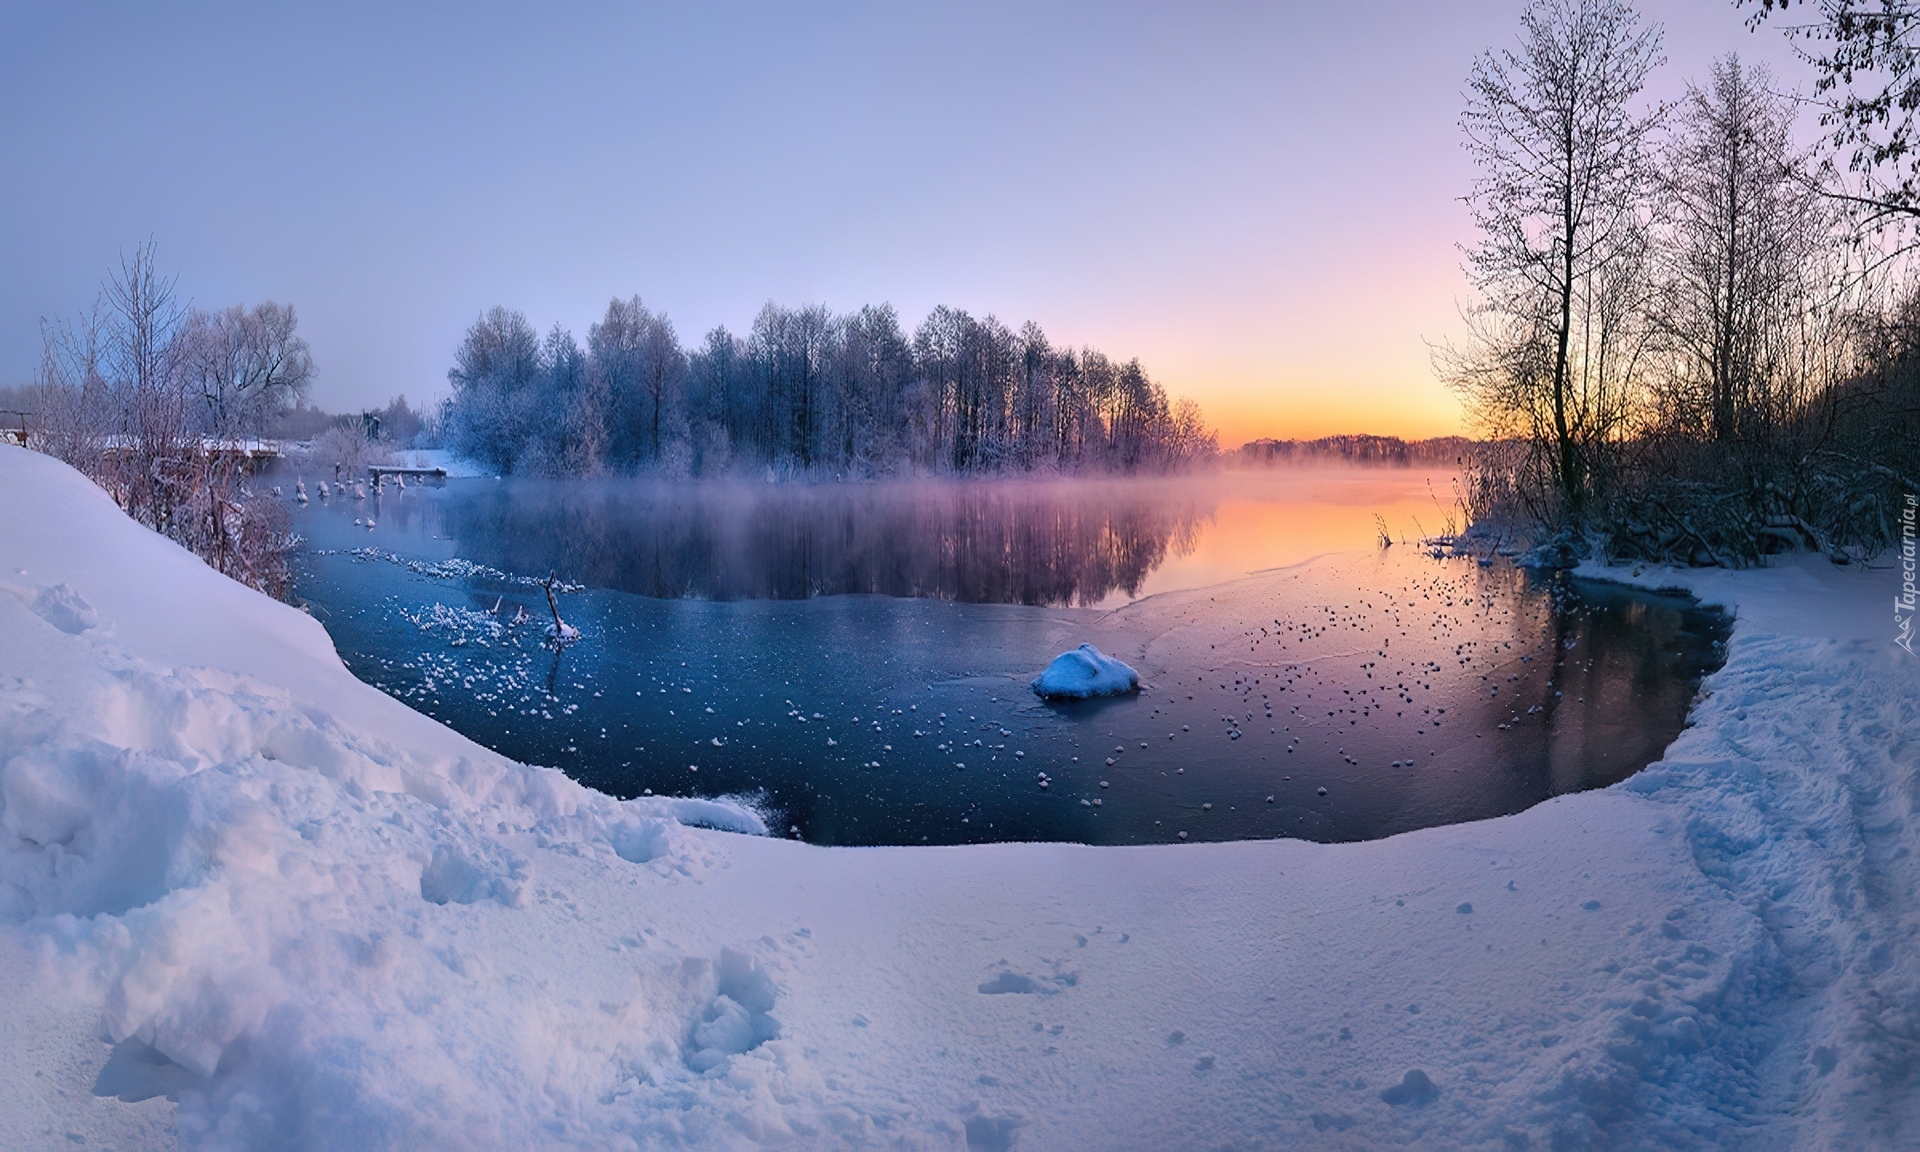 Тихи пруды холод и мрак вод их. Озеро Винтер Рязанская область. Зимняя река подо льдом. Зимний водоем. Пруд зимой.